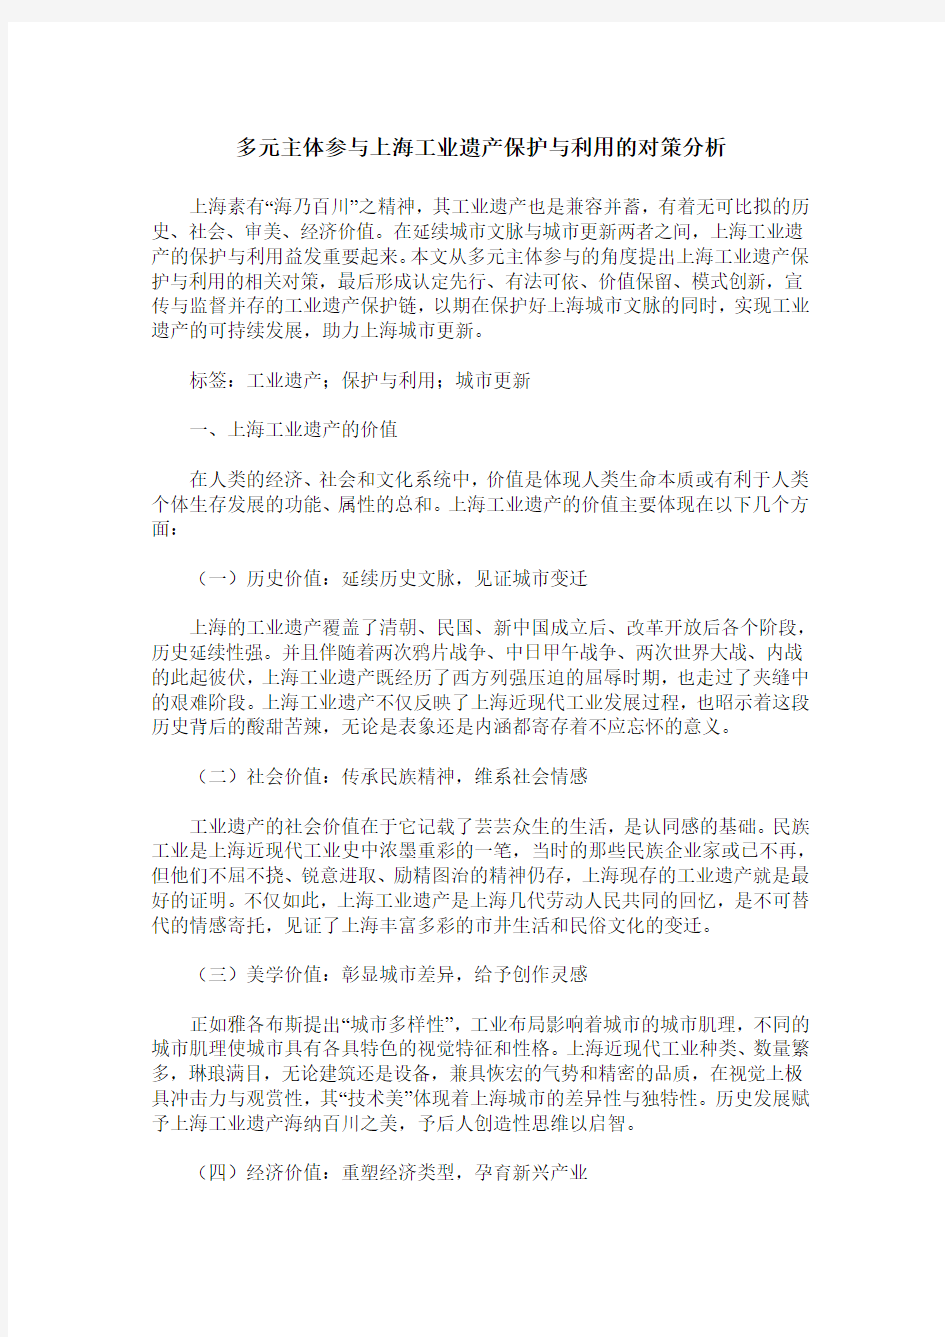 多元主体参与上海工业遗产保护与利用的对策分析_0